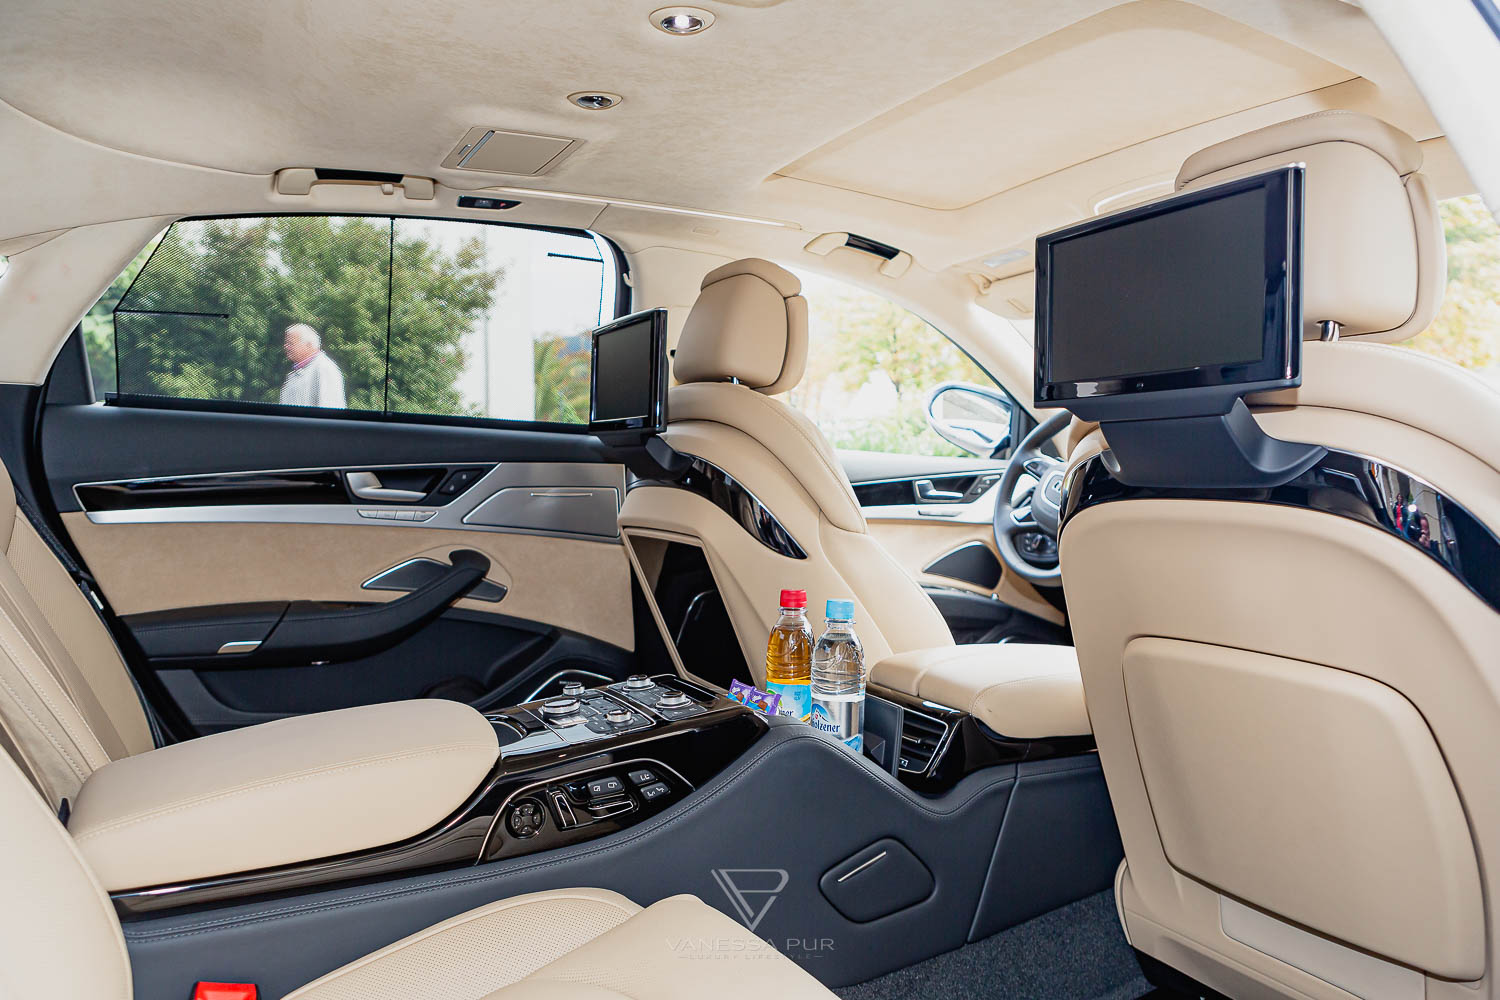 AUDI A8L 6.3 W12 - Fahrbericht mit Business Class Feeling und Luxus-Limousine Luxusauto mit Liegesitz im Test und Erfahrung zum Event als VIP